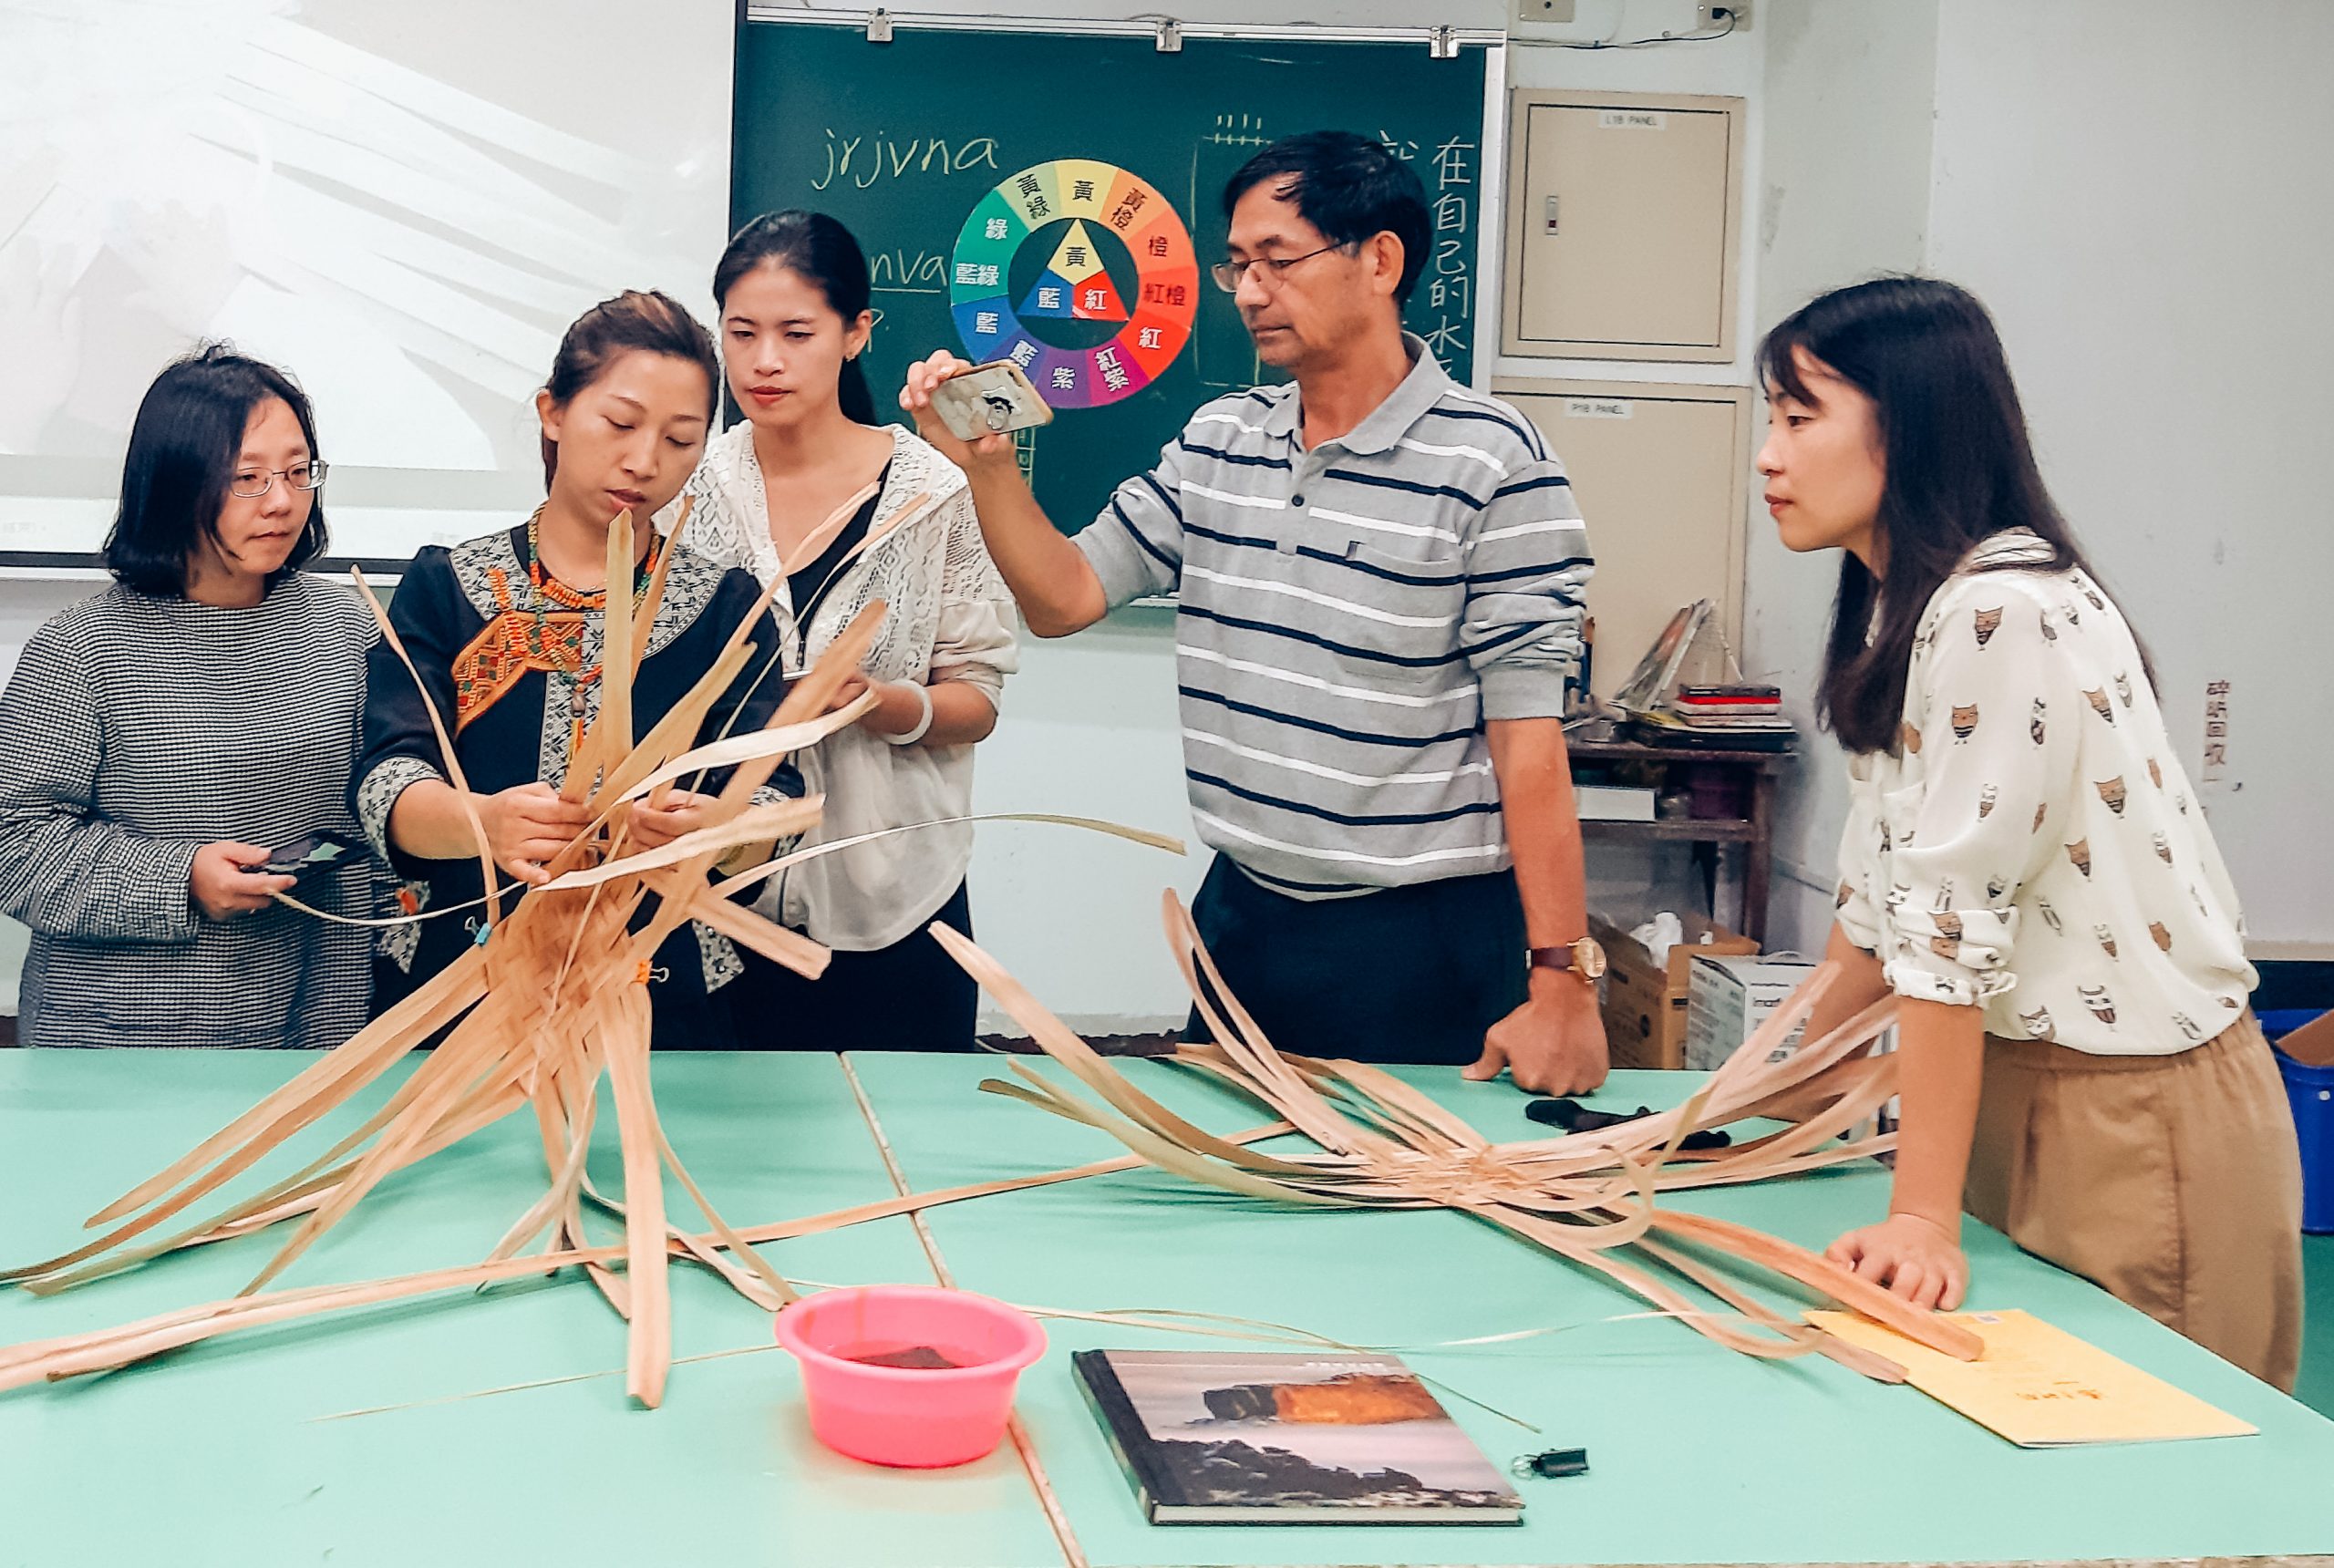 構造體驗工作坊老師們觀看講師示範木片作品的製作流程